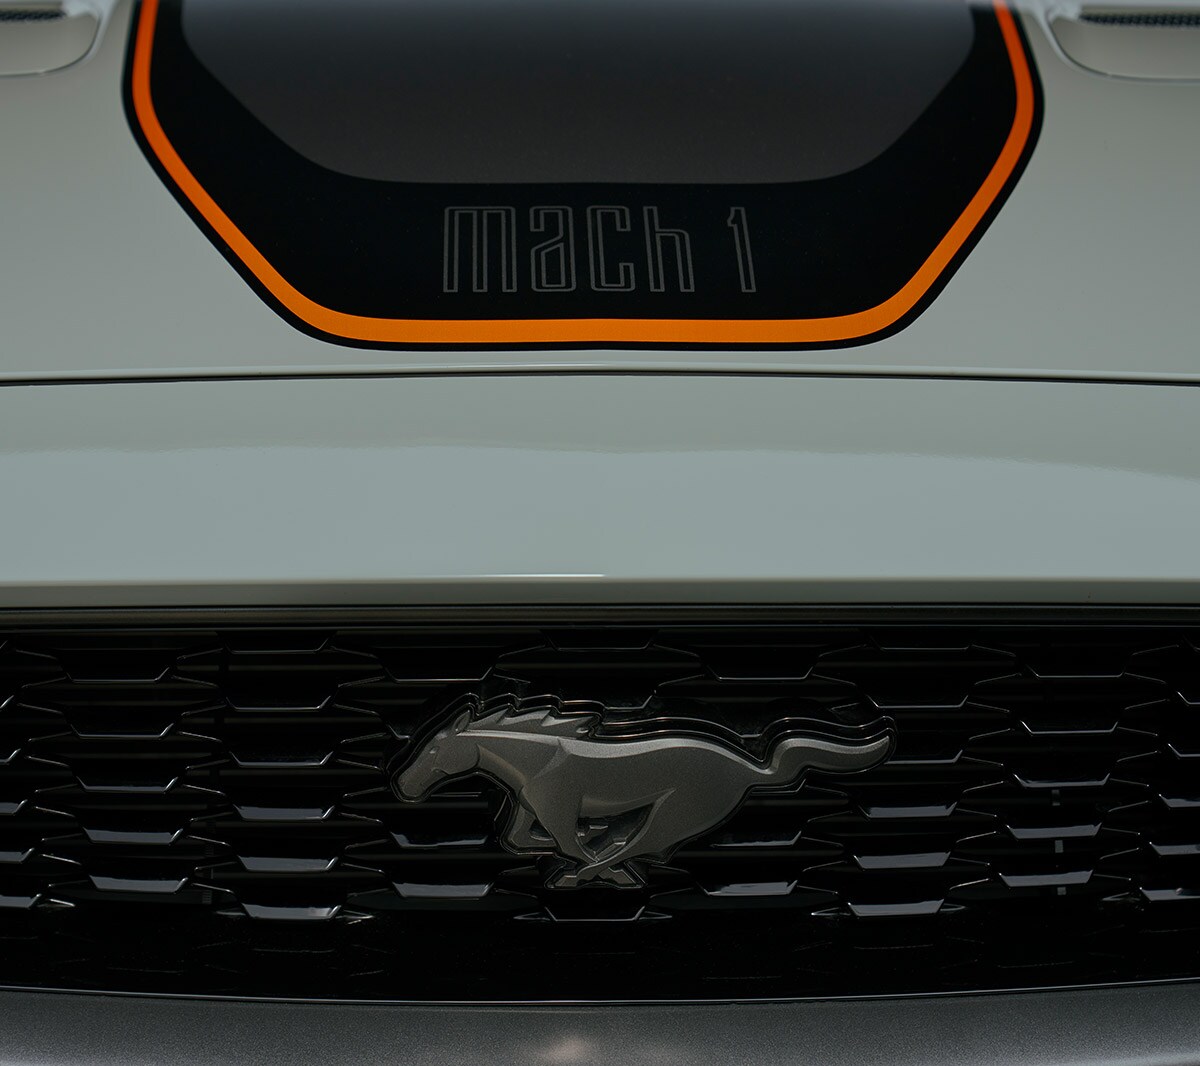 Ford Mustang Mach 1 couleur blanche. Vue détaillée du cheval galopant sur la calandre